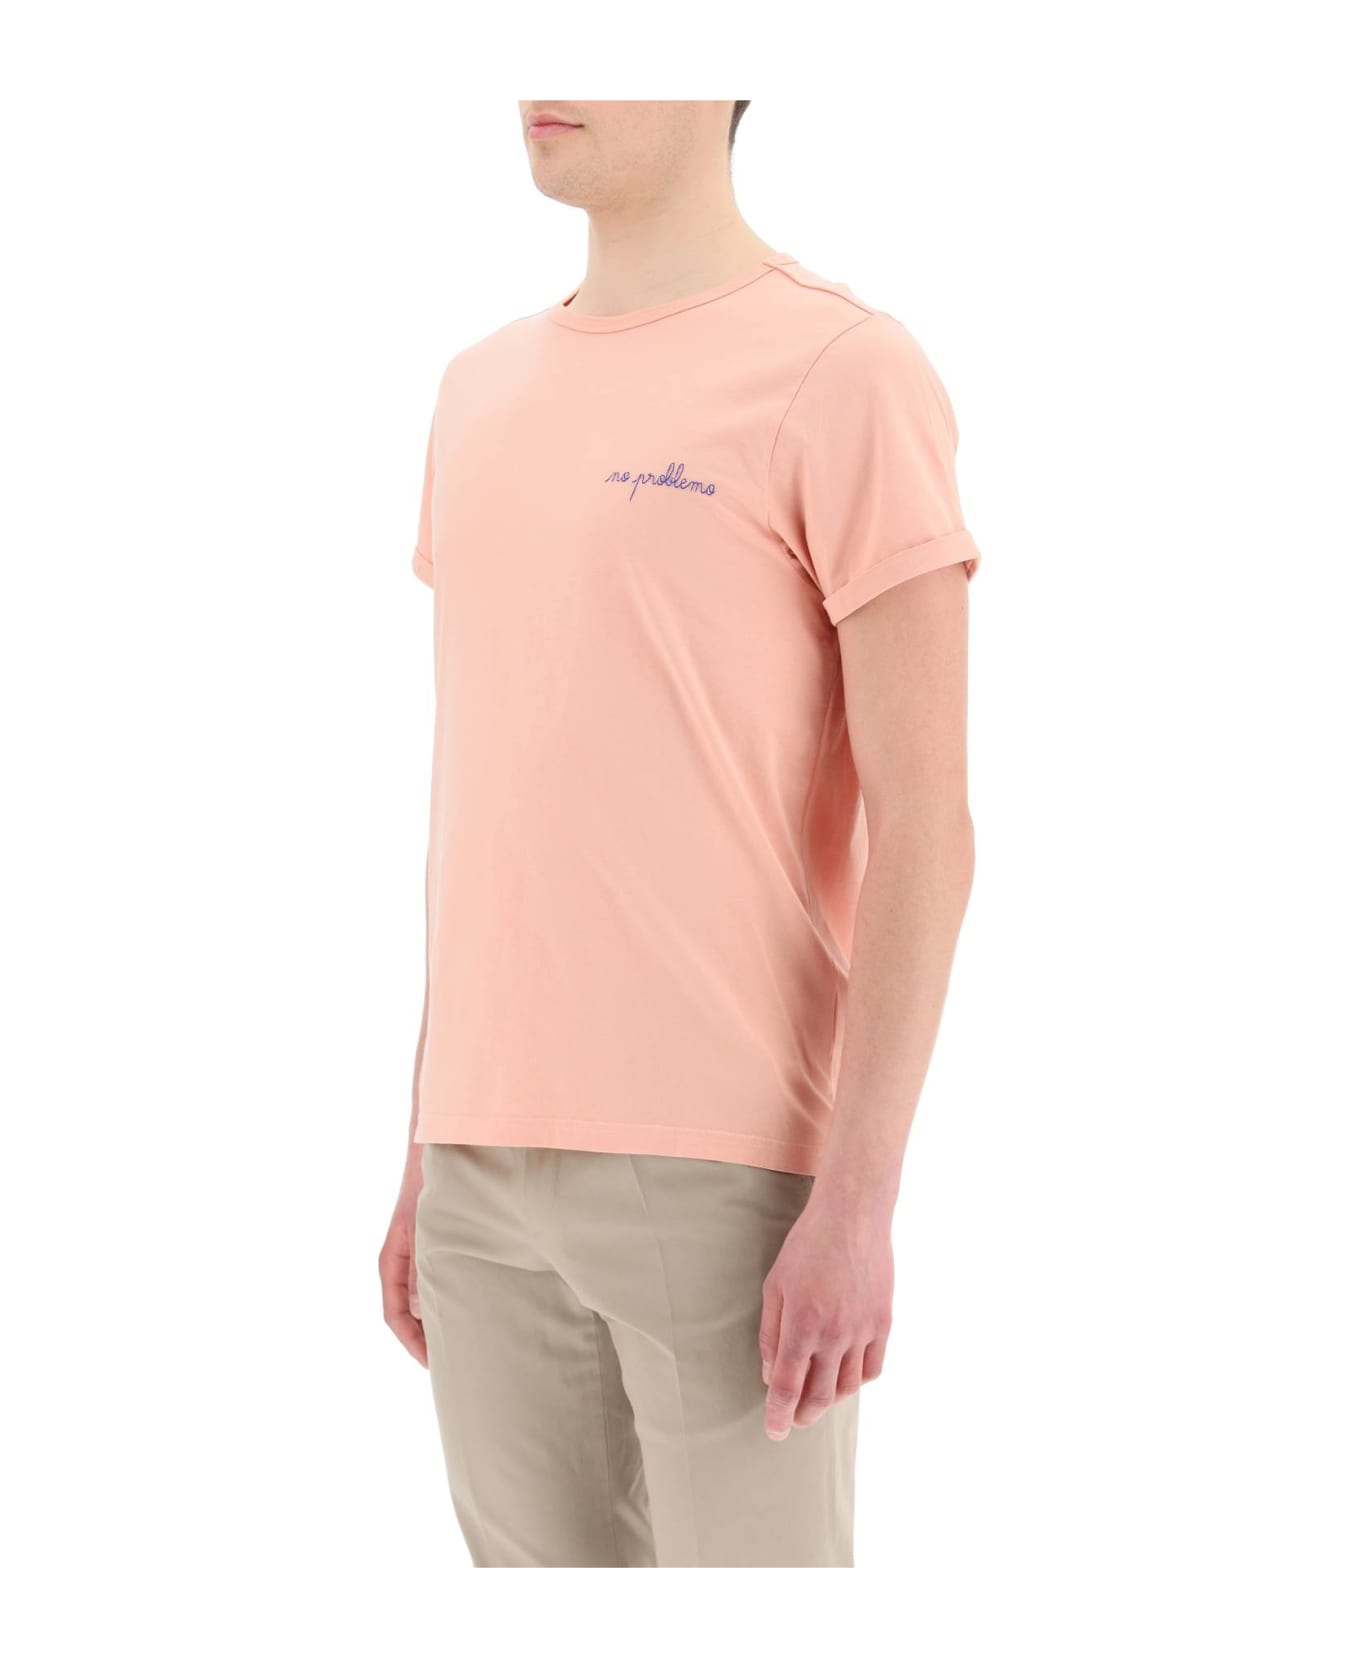 Maison Labiche Poitou T-shirt - BLUSH (Pink)